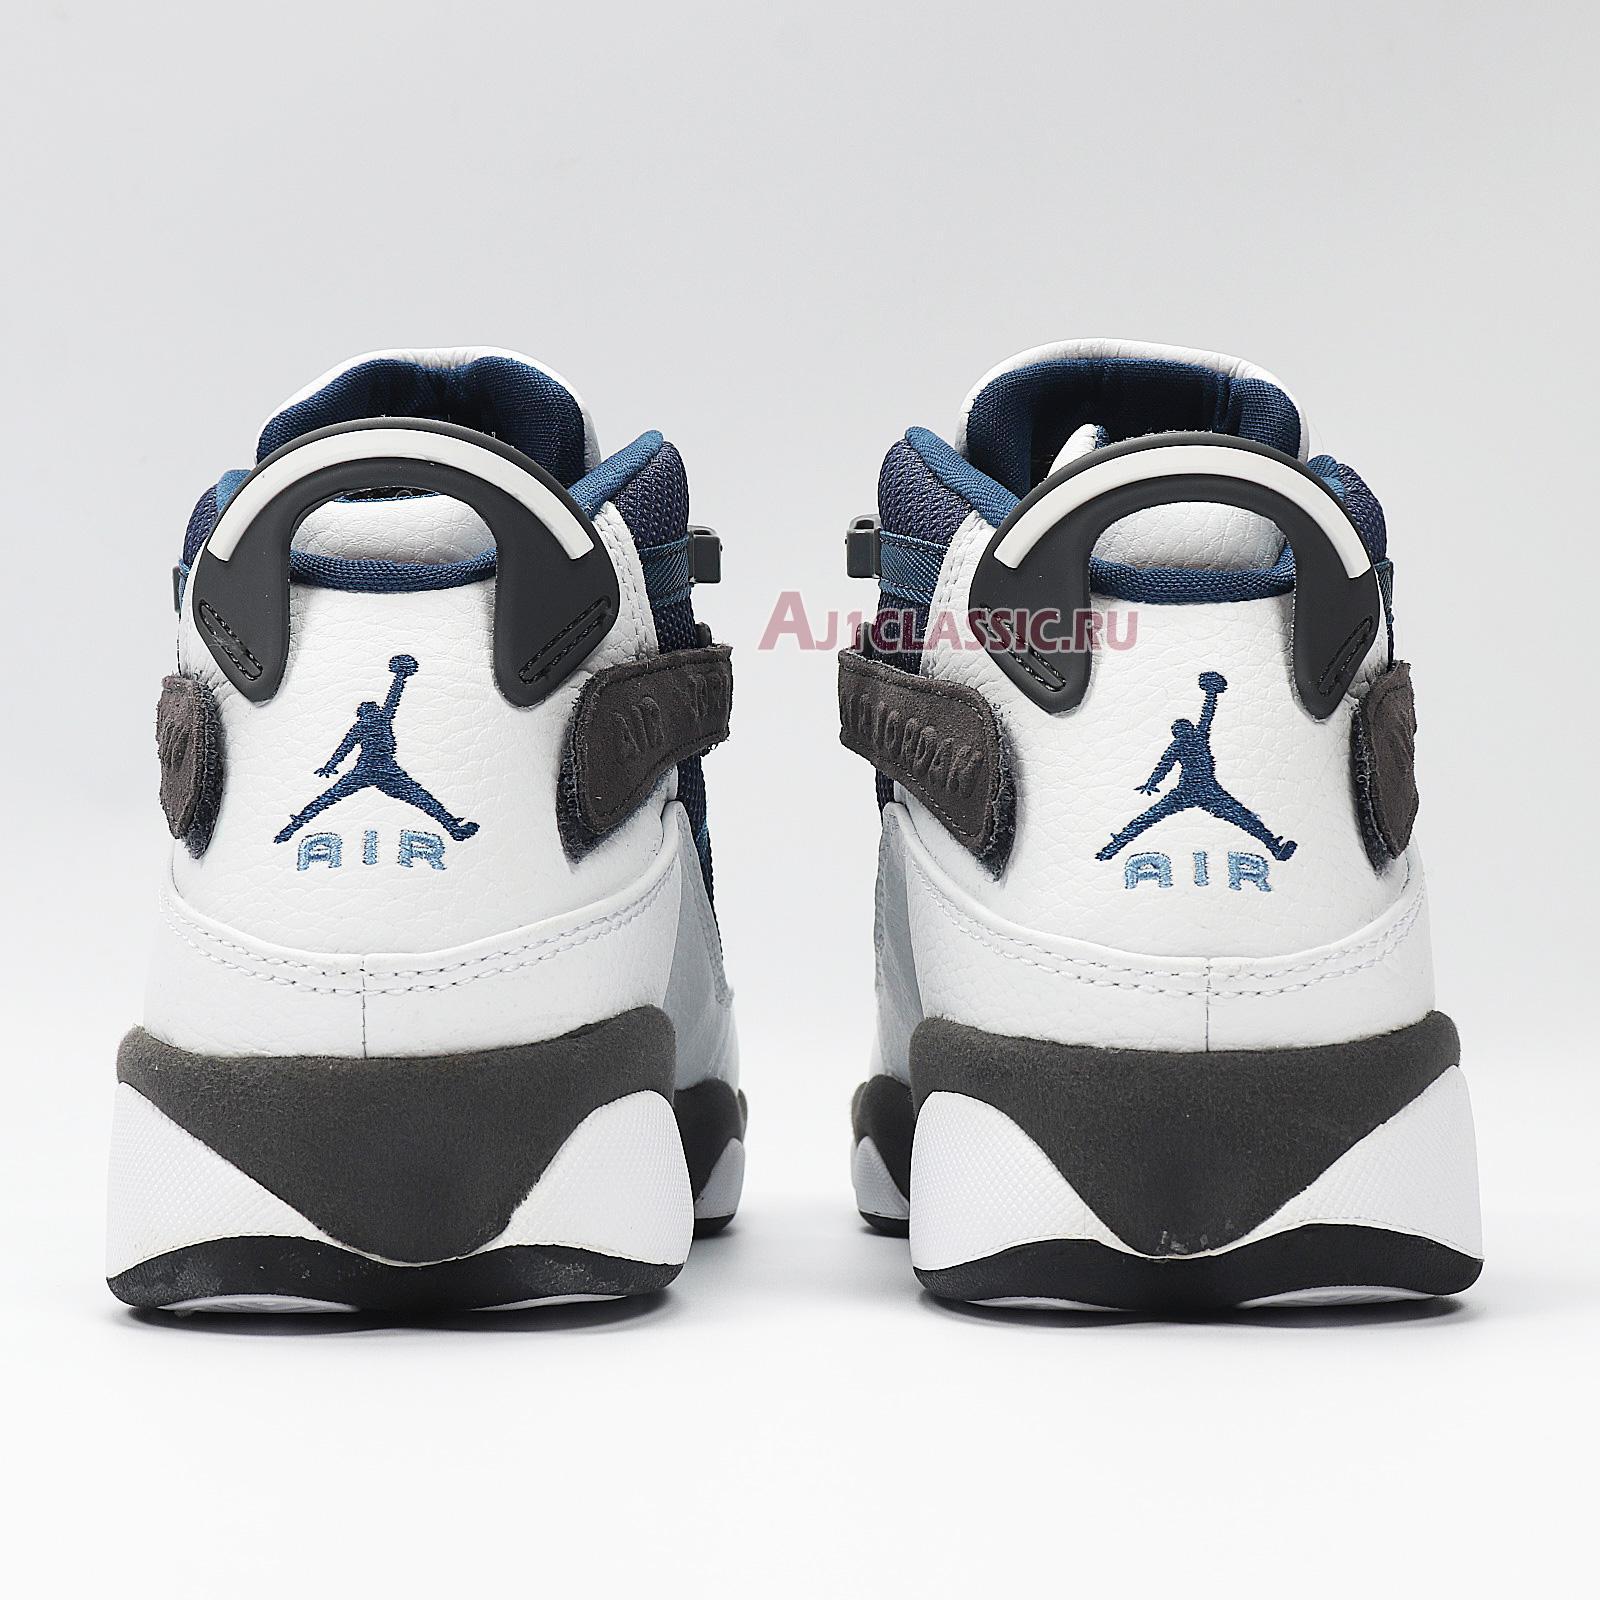 Air Jordan 6 Rings "Flint" 322992-141